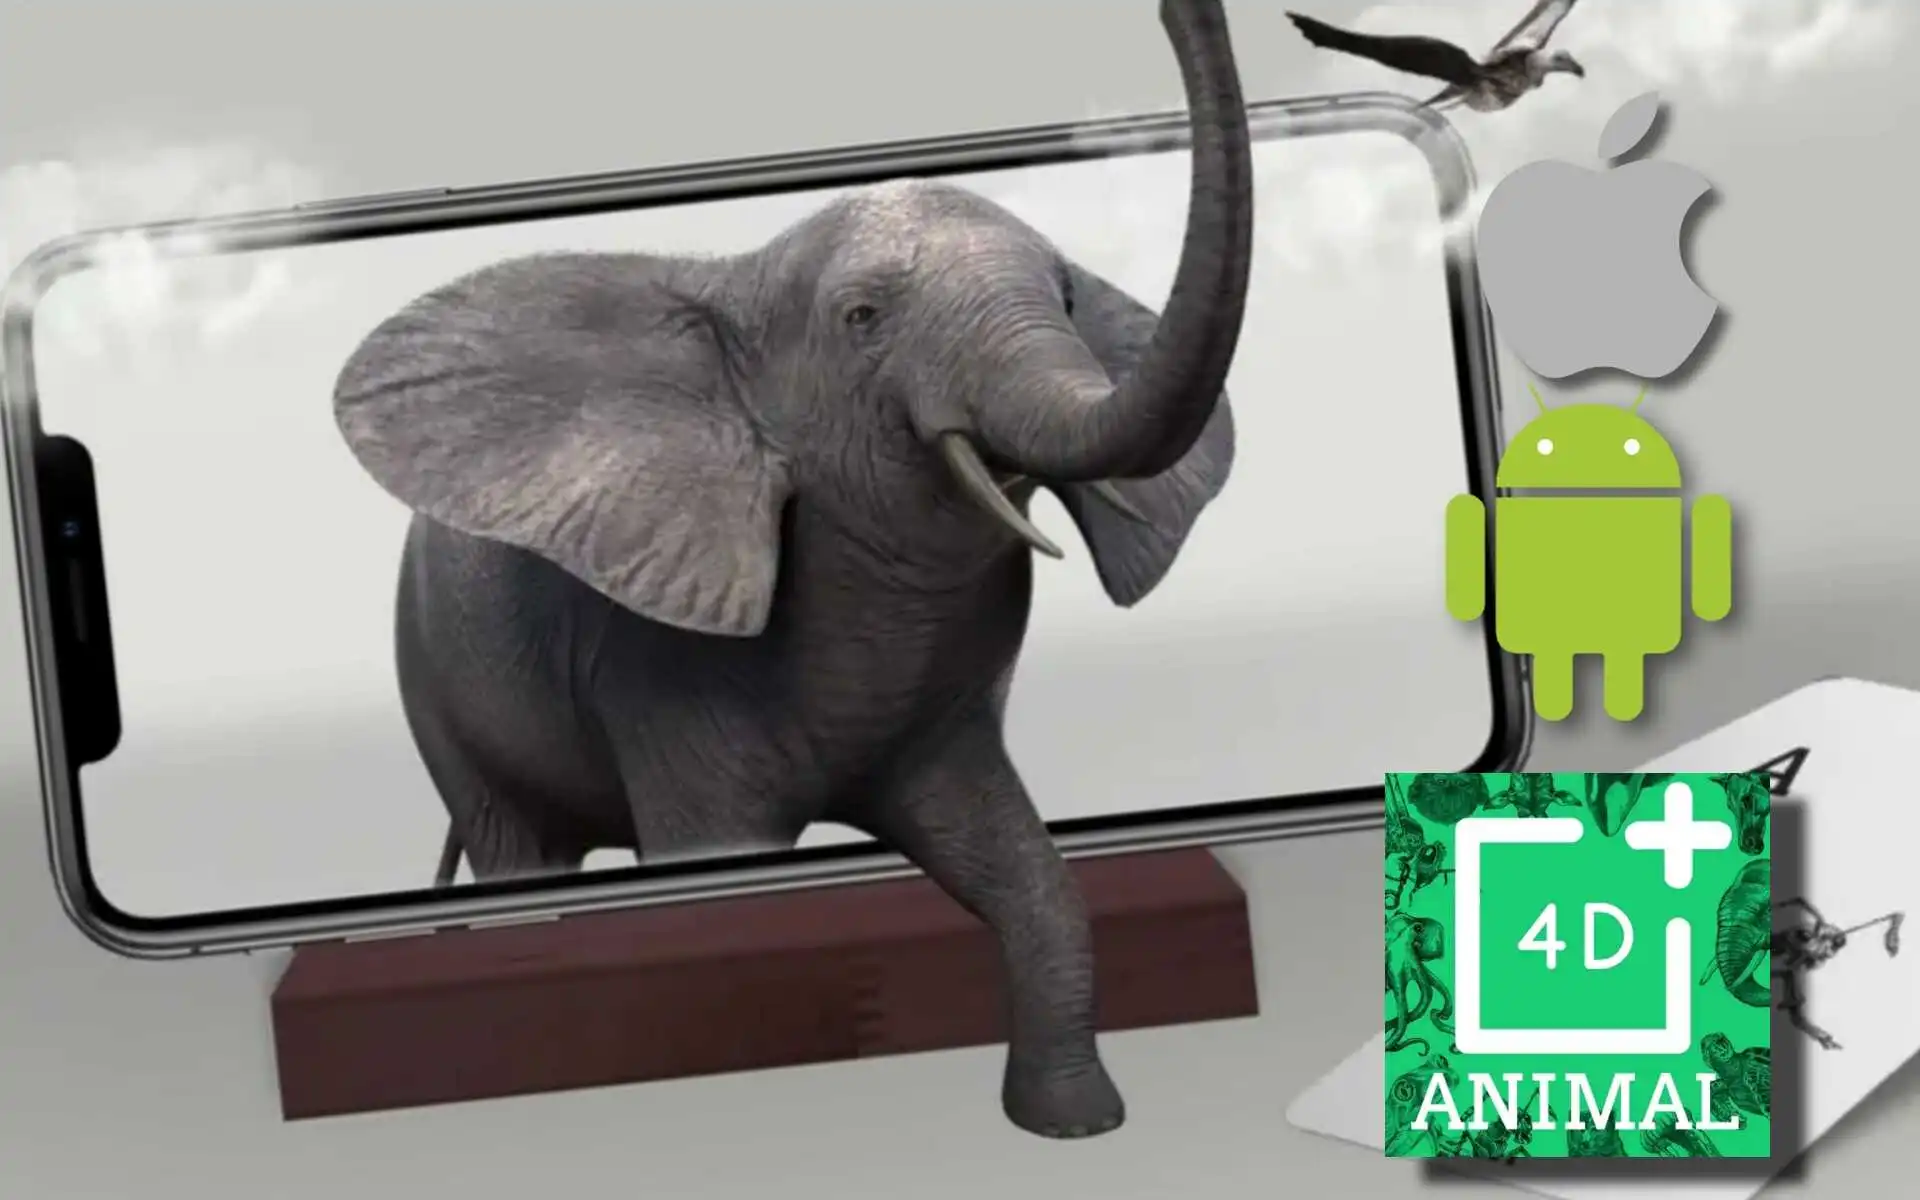 تحميل تطبيق Animal 4D: لإظهار الحيوانات بتقنية الواقع المعزز